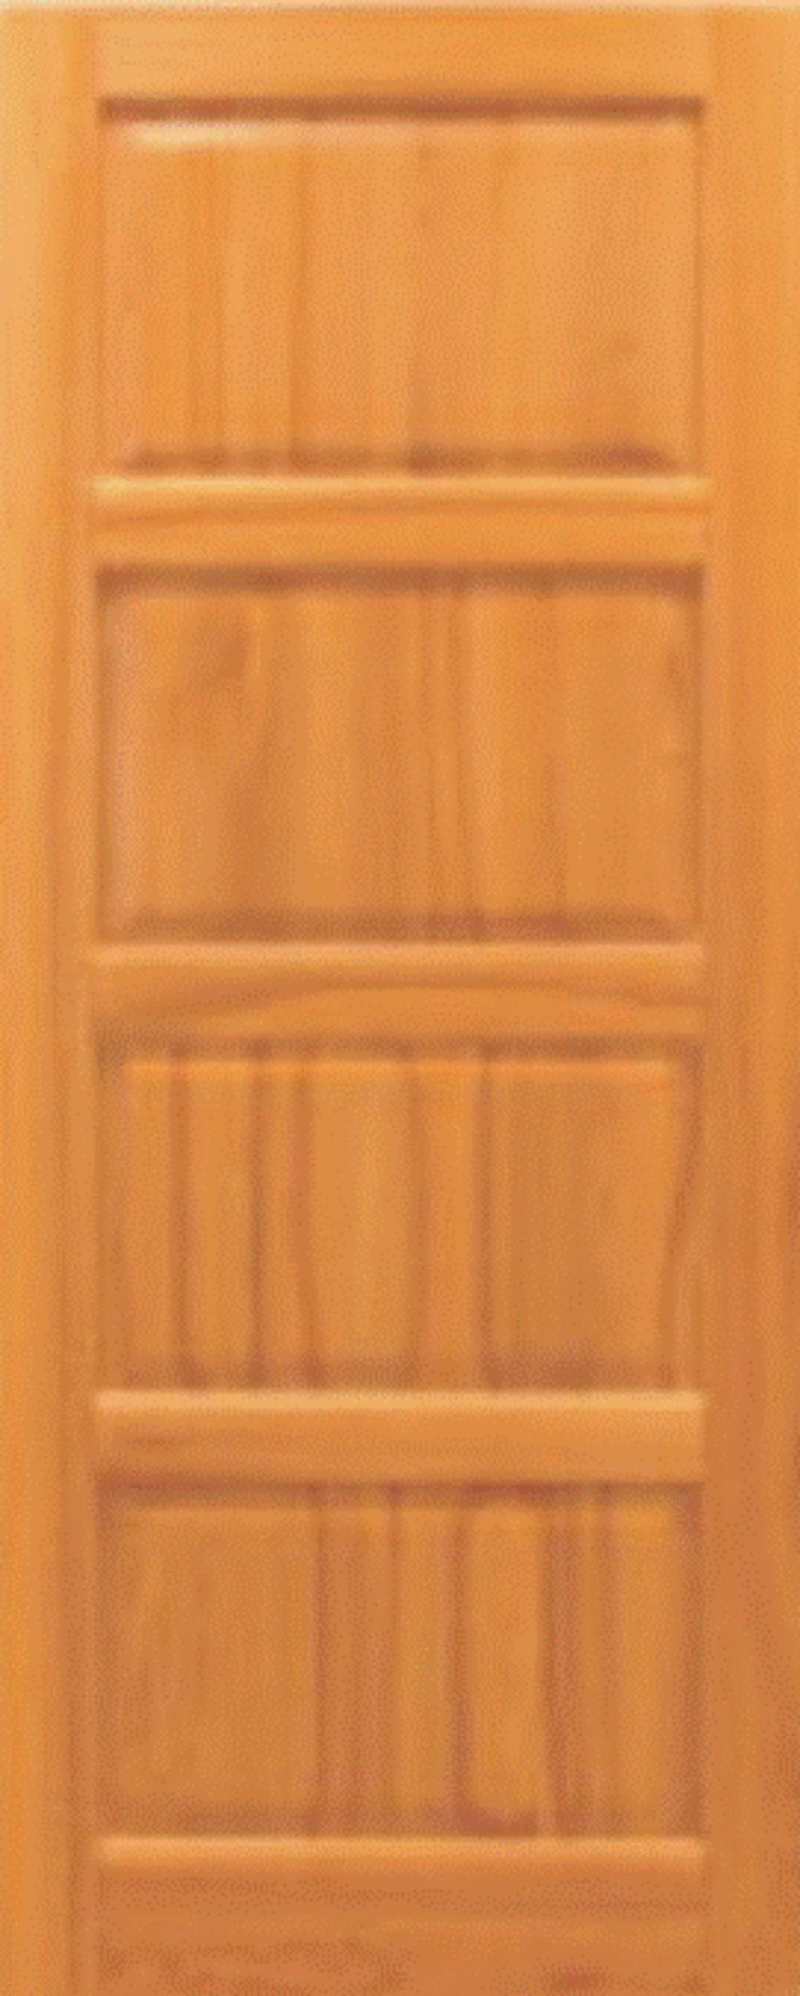 деревянную дверь для дачи